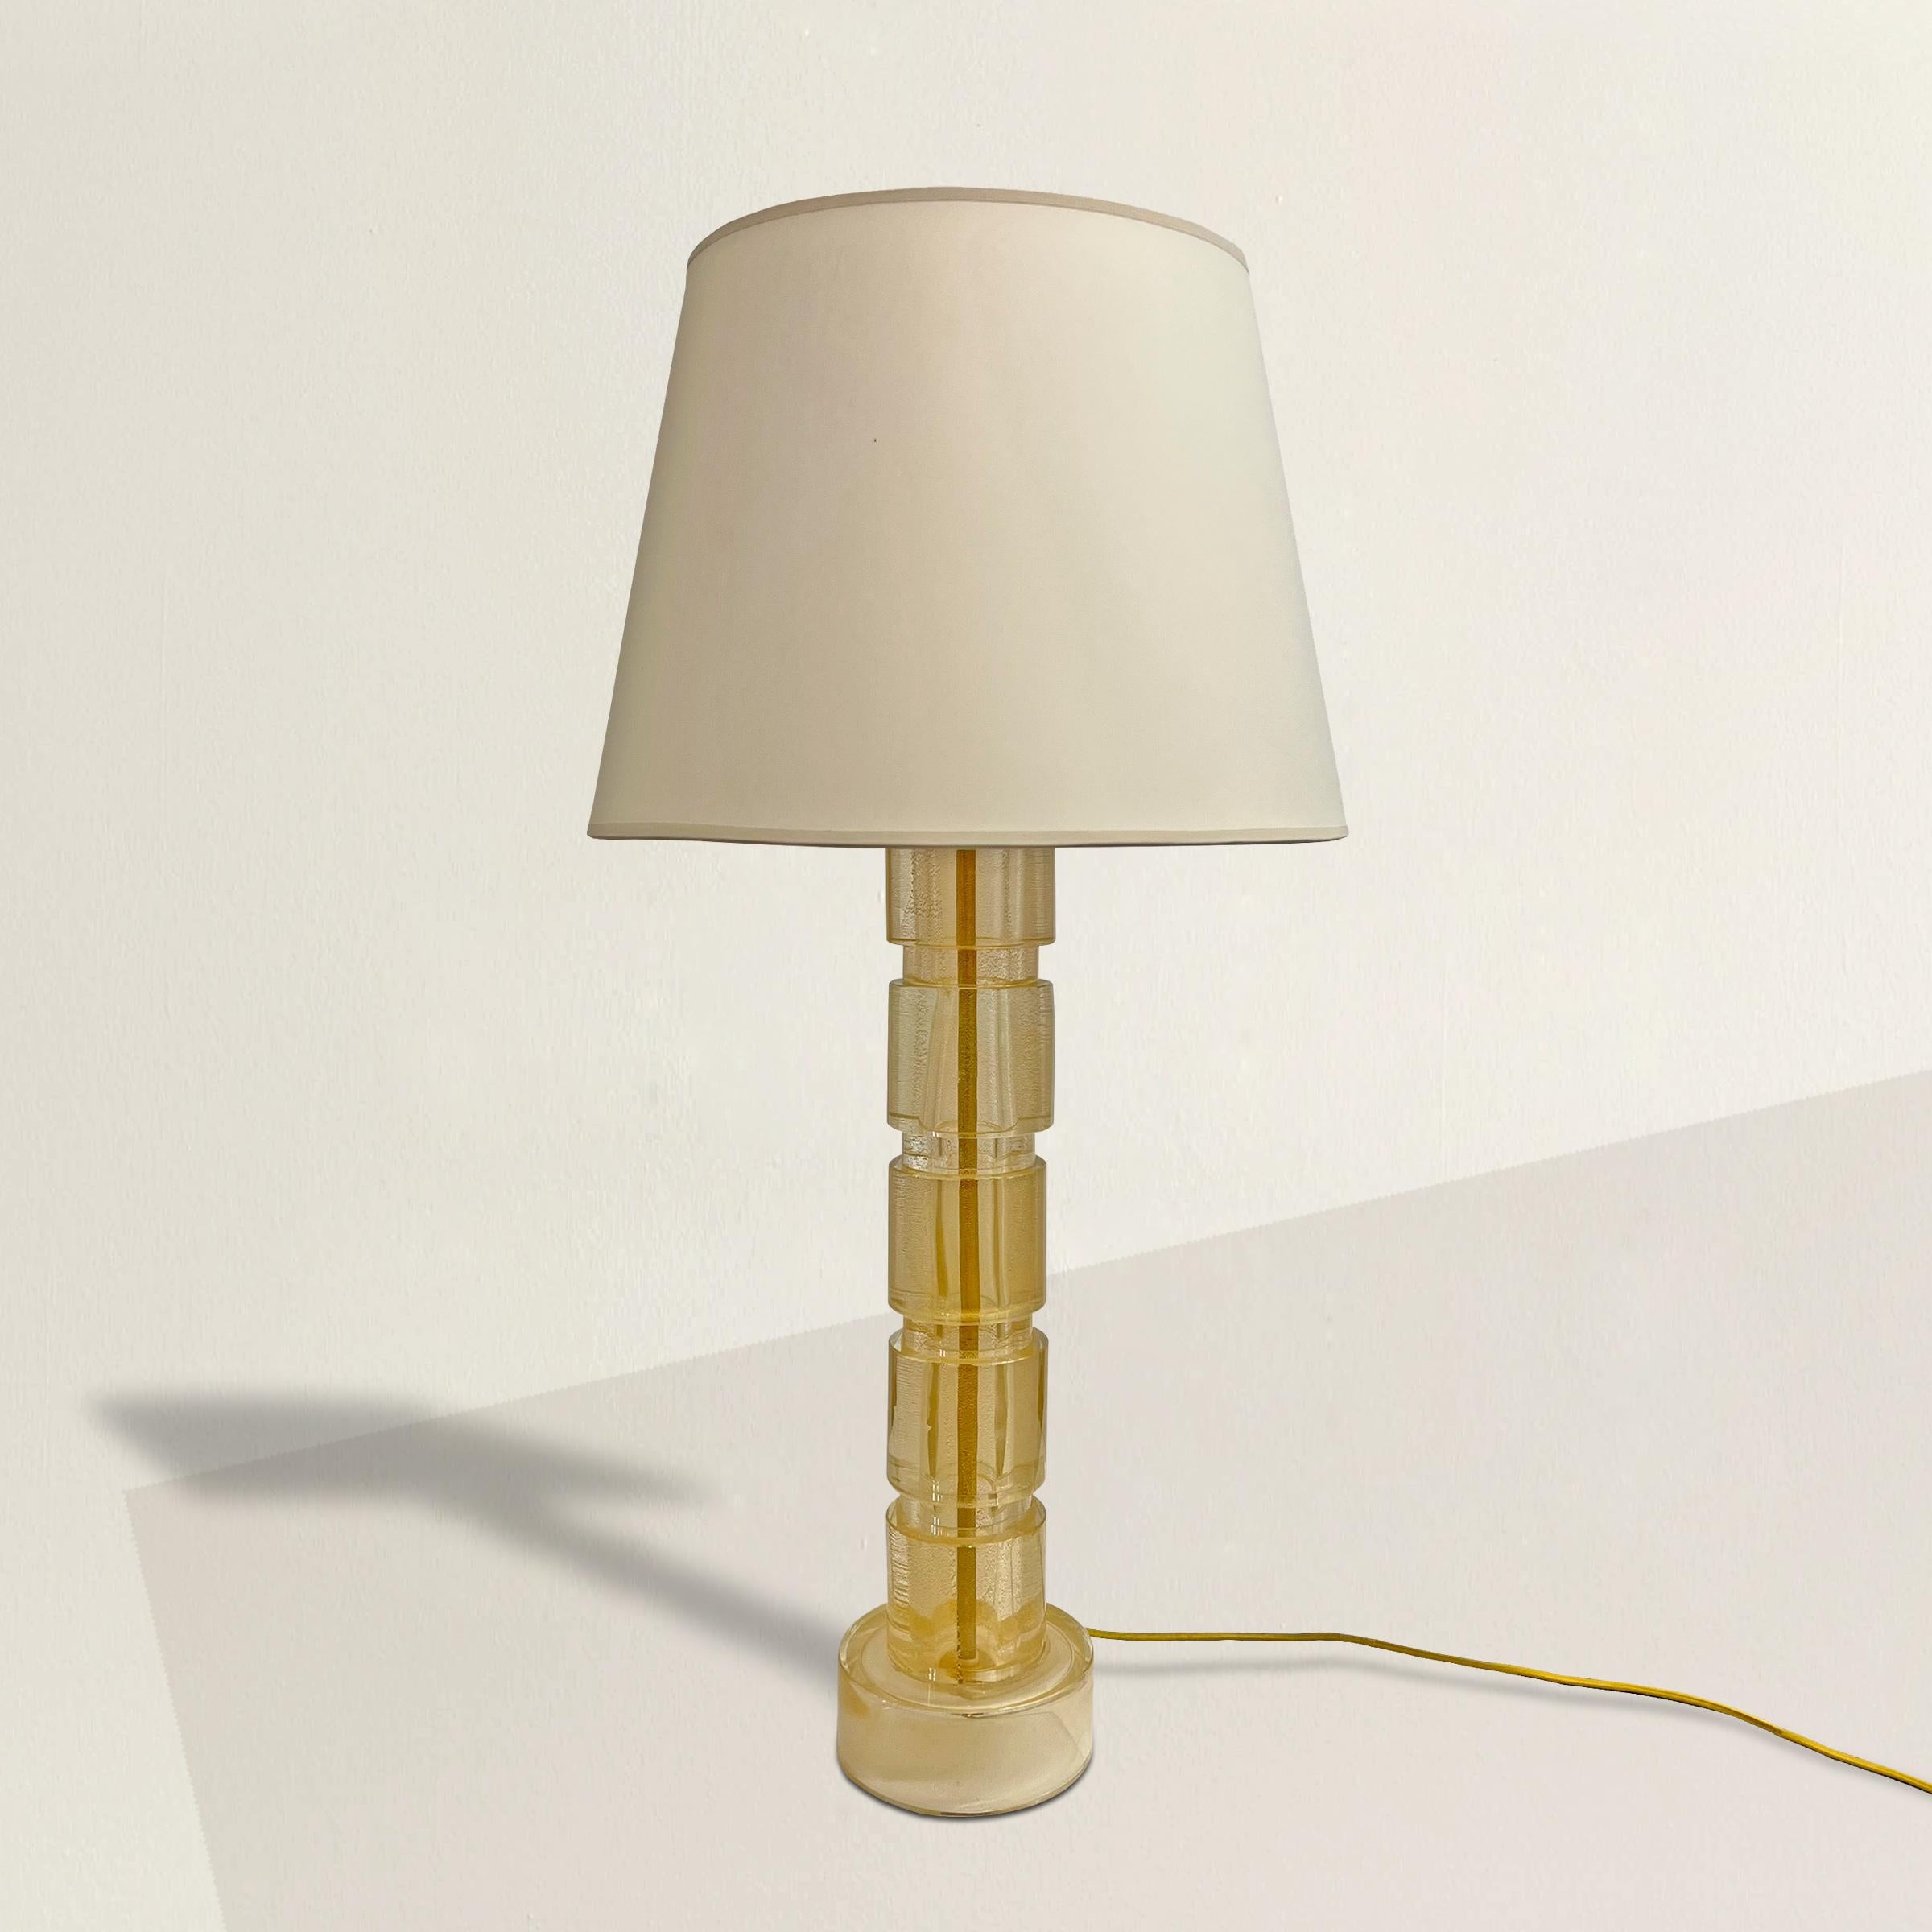 Une lampe de table en verre vintage italien Murano Avventurina avec une silhouette chic, un abat-jour en papier et des inclusions de mouchetures d'or étincelantes qui captent même la lumière la plus douce de la pièce. Le verre Avventurina est une